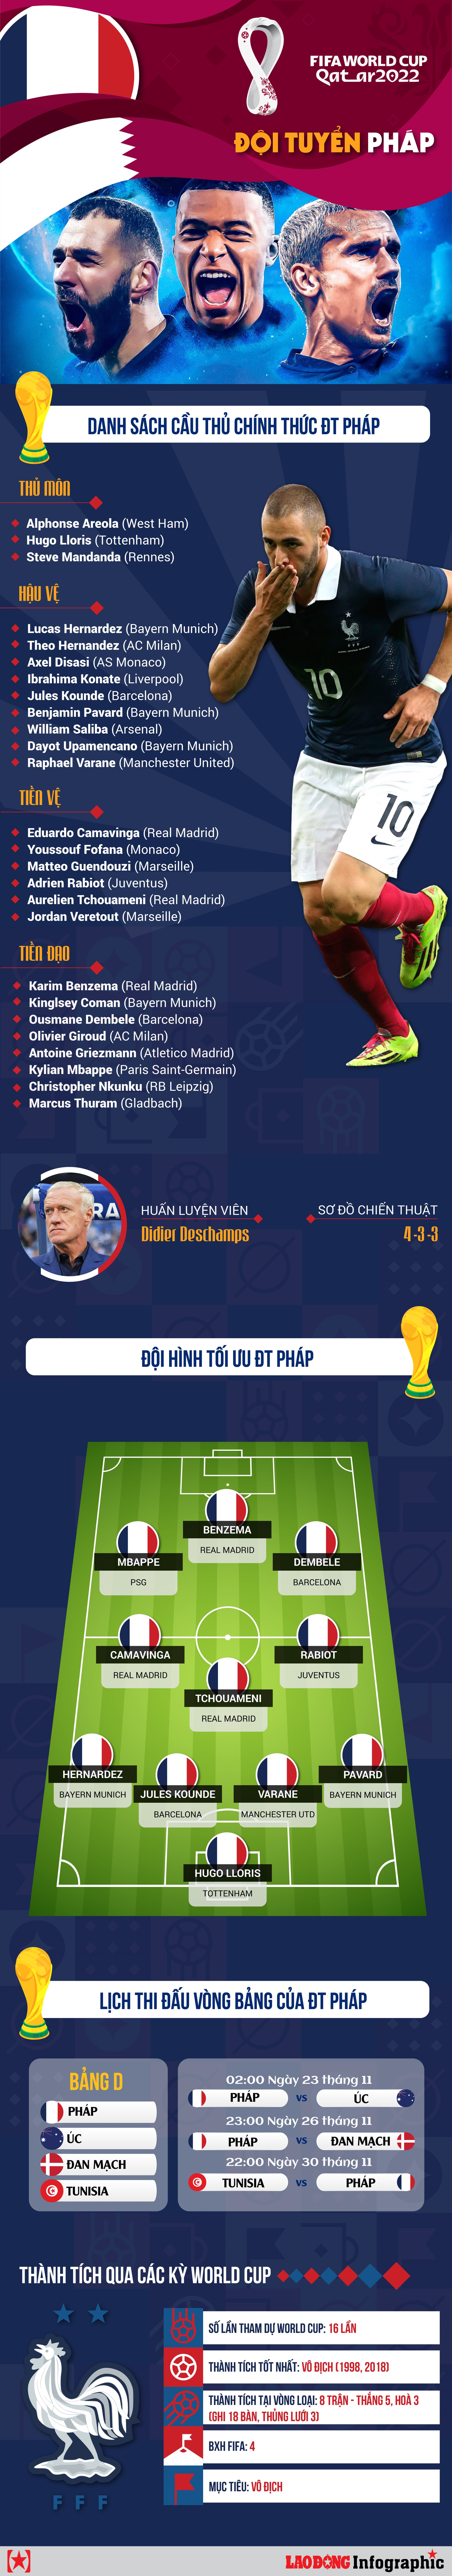 World Cup 2022: Thông tin chi tiết về đội tuyển Pháp